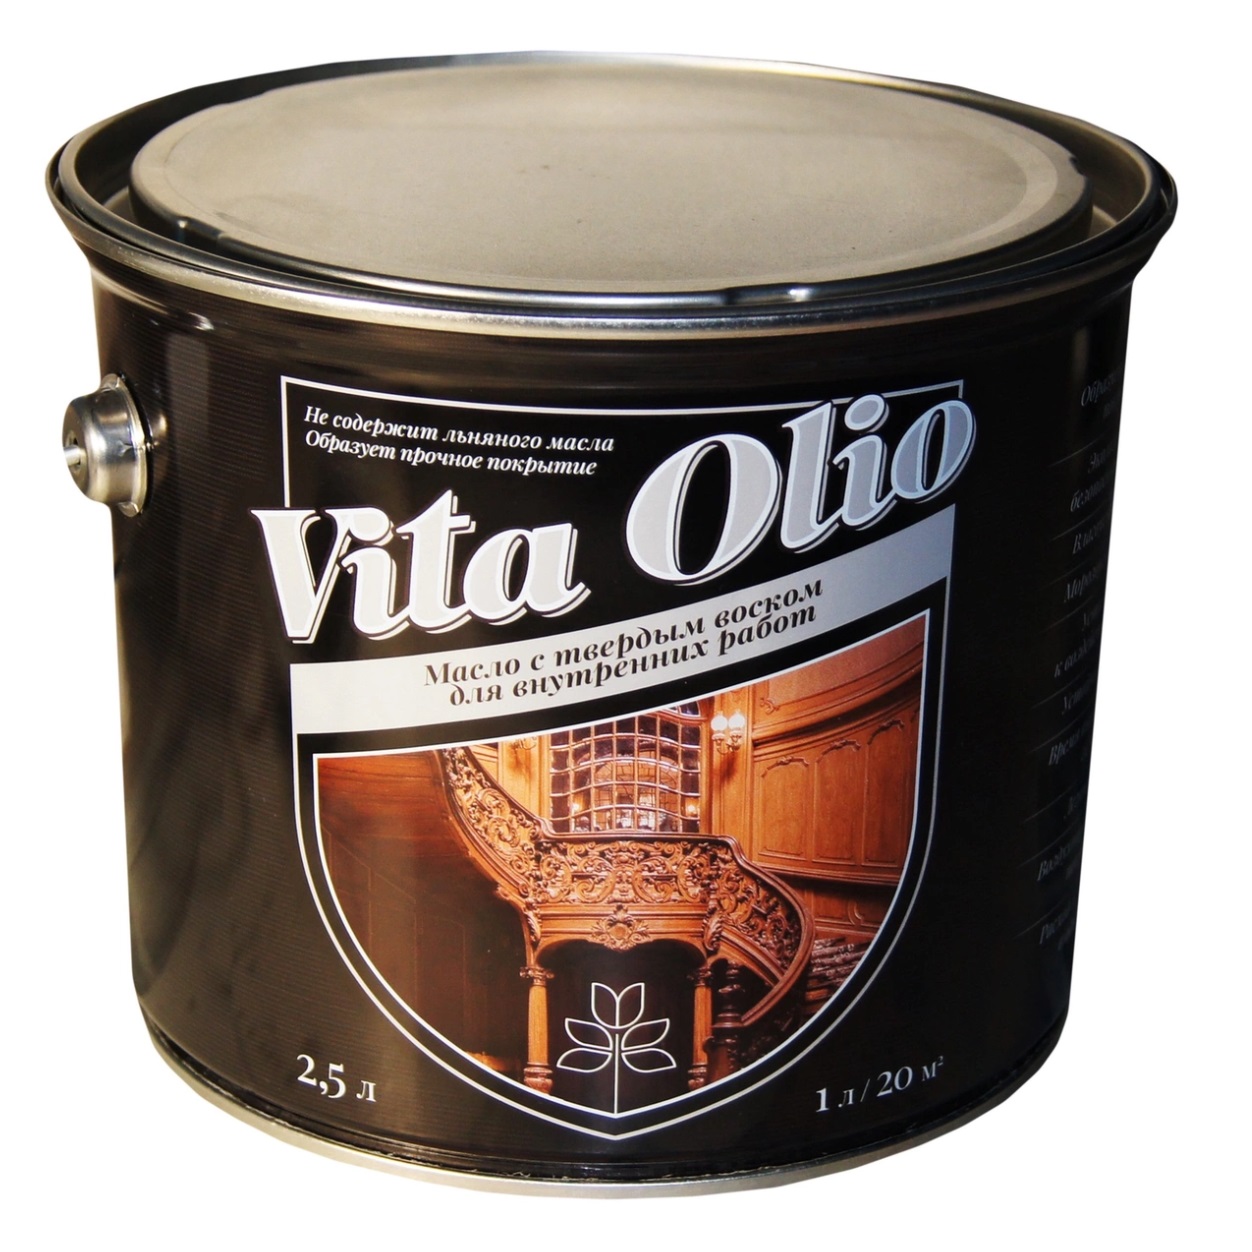 Масло VITA OLIO для внутренних работ с твердым воском шелковисто-матовое цвет сосна. 2,5 л.